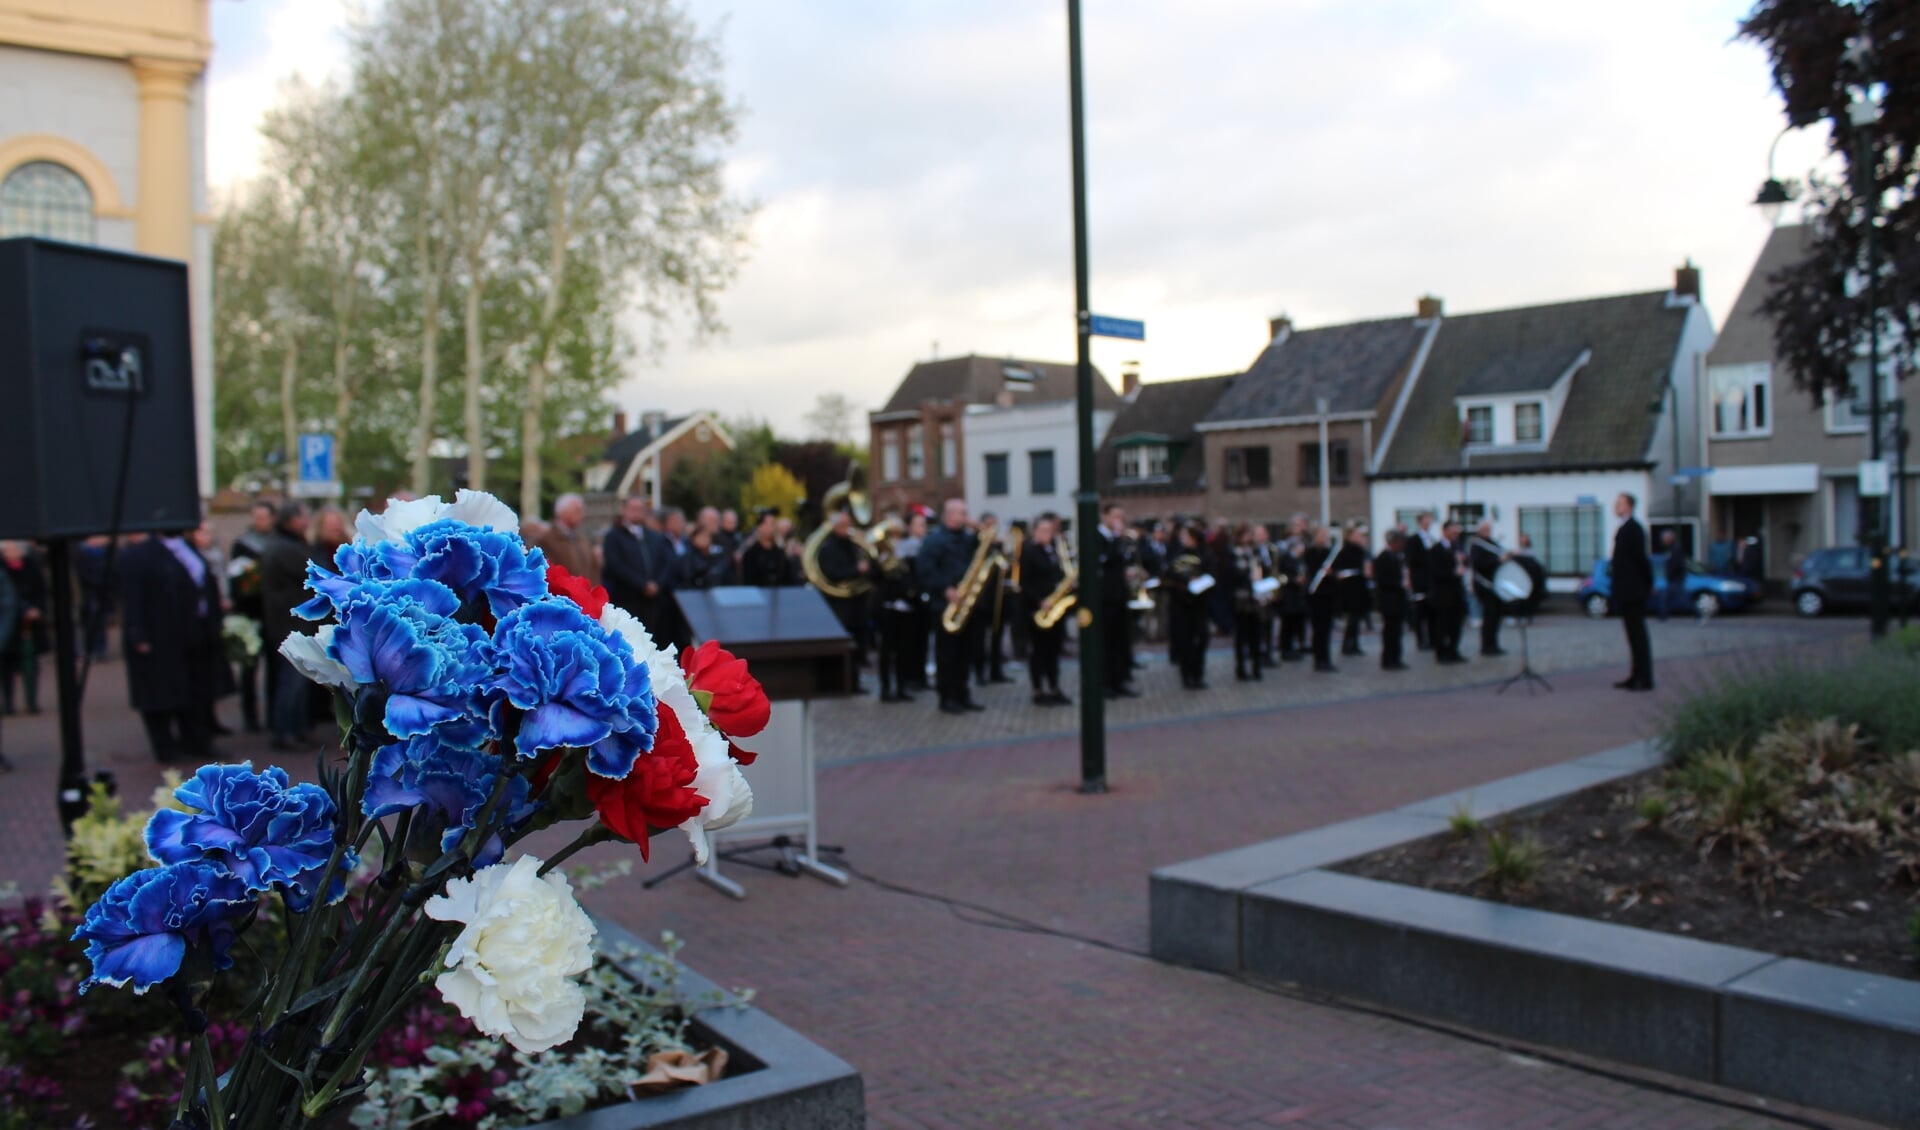 Iedere deelnemer ontving van de Scouting Steenbergen een anjer in de kleur van de Nederlandse vlag om bij de graven te leggen aan de Nassaulaan.